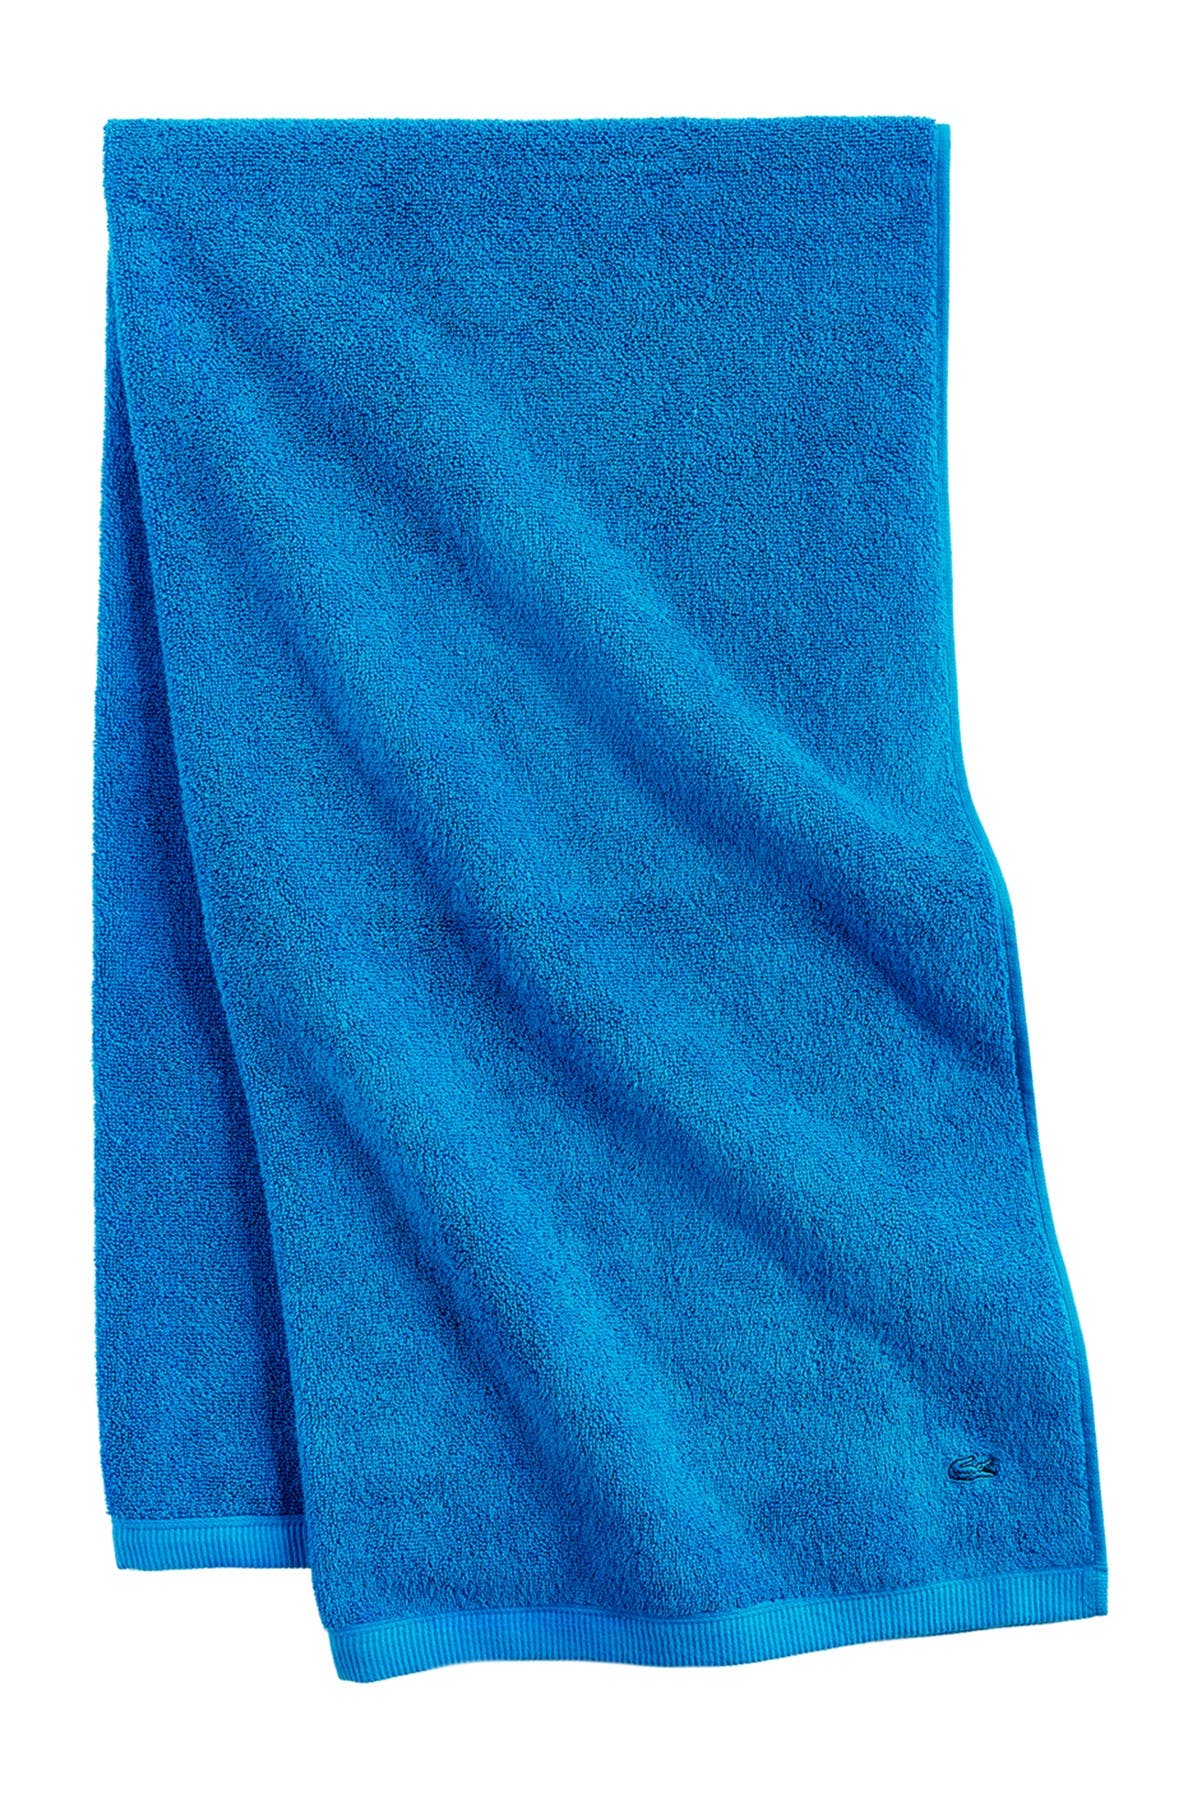 Lacoste | Ace Cerulean Towel 